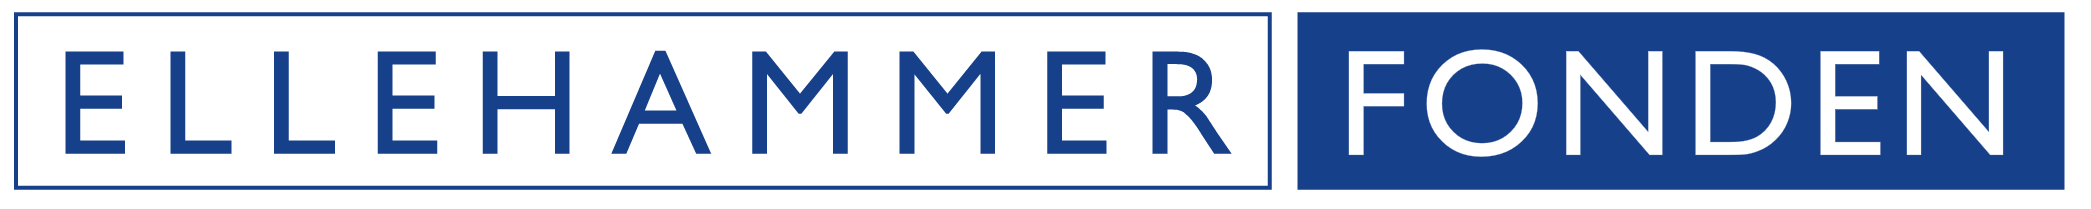 Ellehammer Logo - Ellehammerfonden